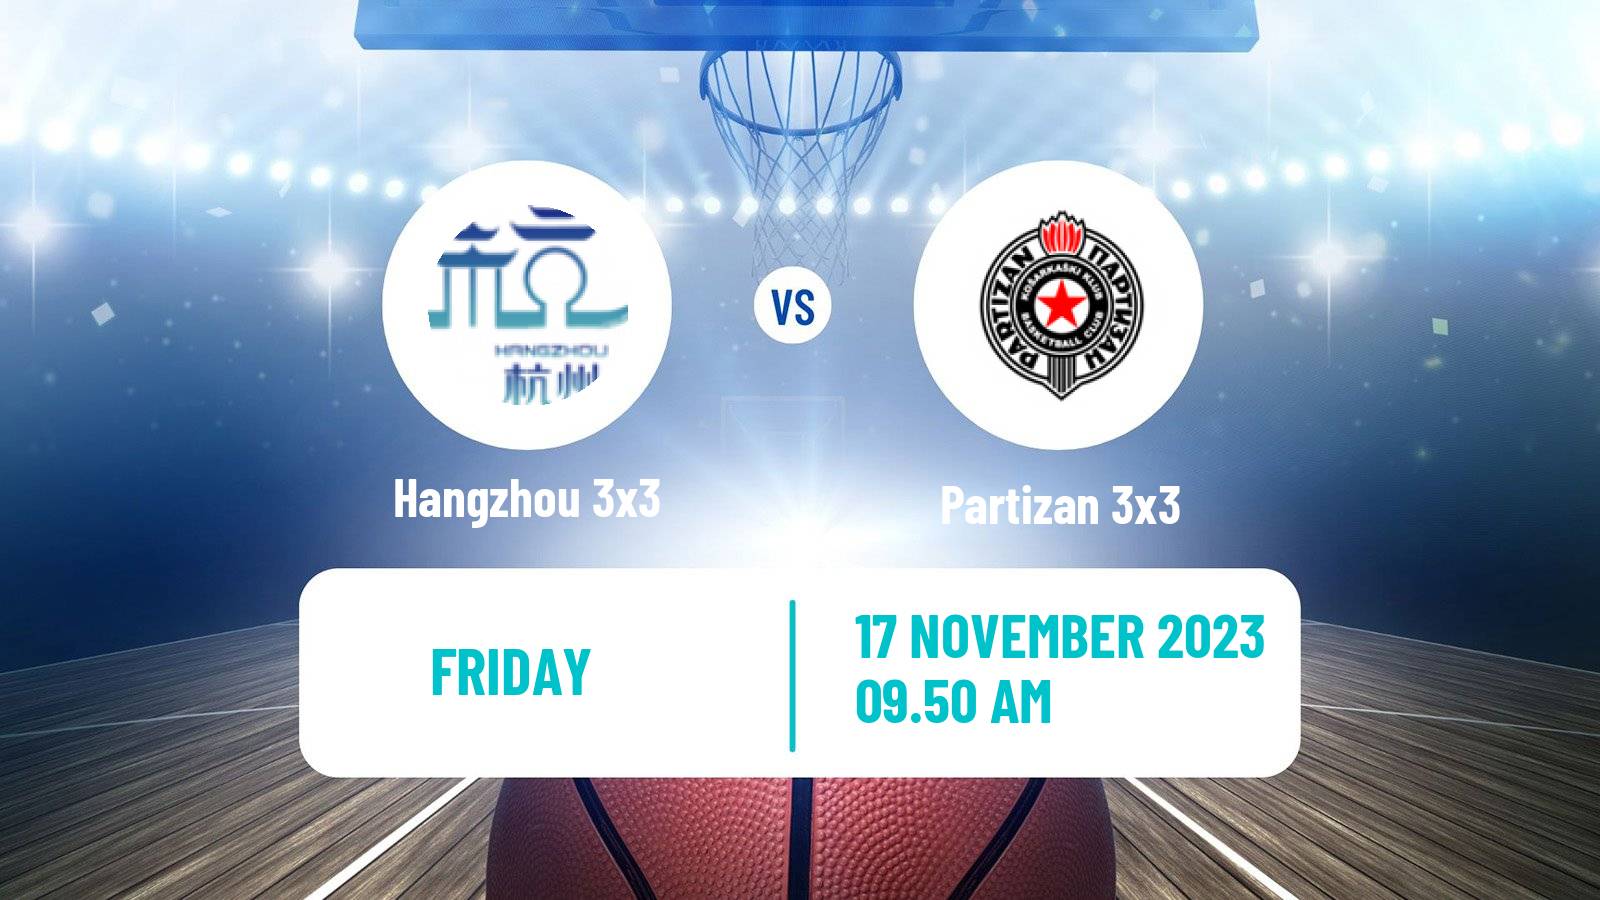 Basketball World Tour Manama 3x3 Hangzhou 3x3 - Partizan 3x3